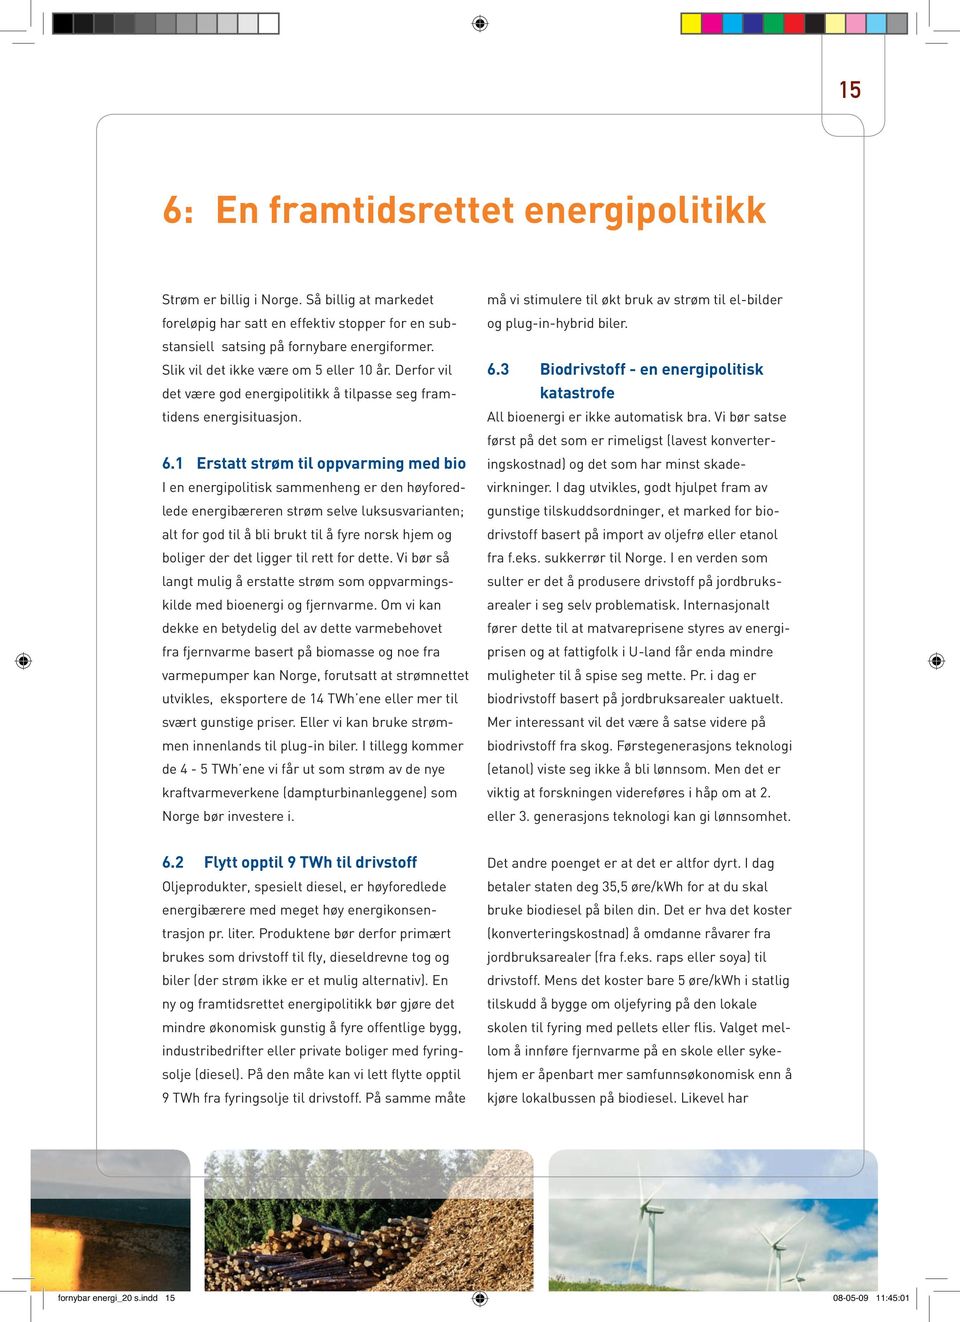 1 Erstatt strøm til oppvarming med bio I en energipolitisk sammenheng er den høyforedlede energibæreren strøm selve luksusvarianten; alt for god til å bli brukt til å fyre norsk hjem og boliger der